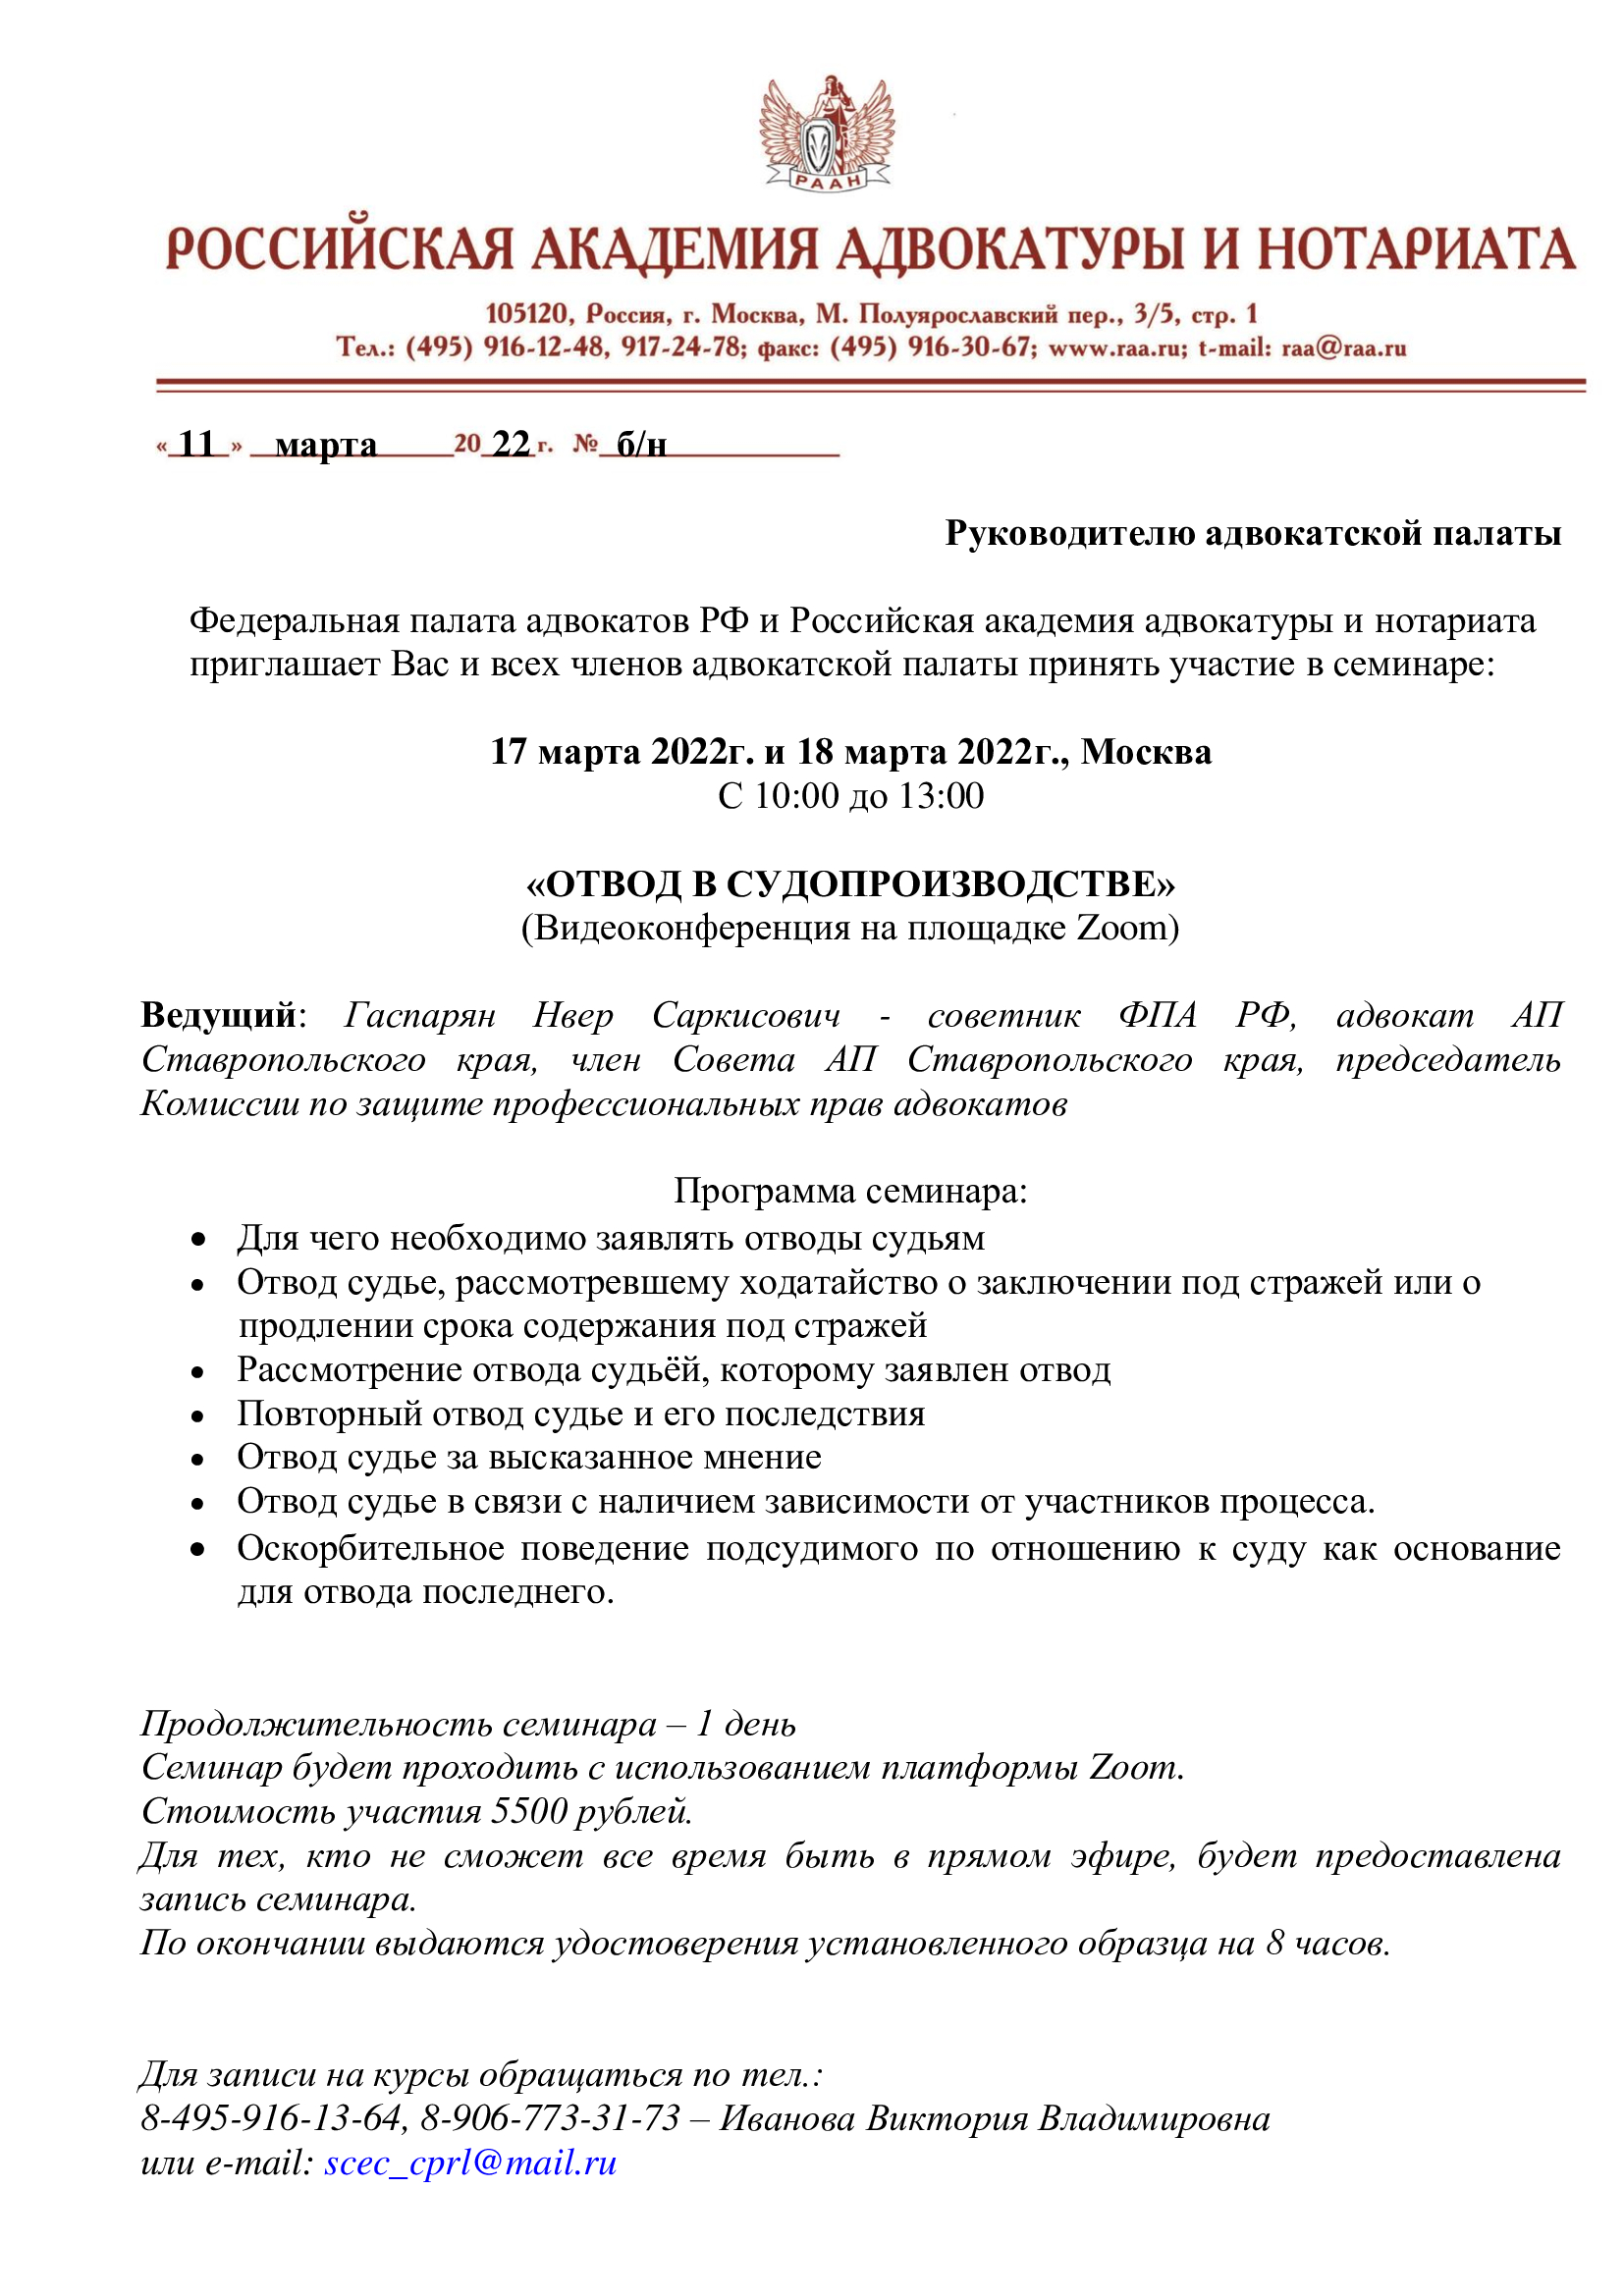  Курсы повышения квалификации адвокатов 17.03.2022 г. и 31.03.2022 г.